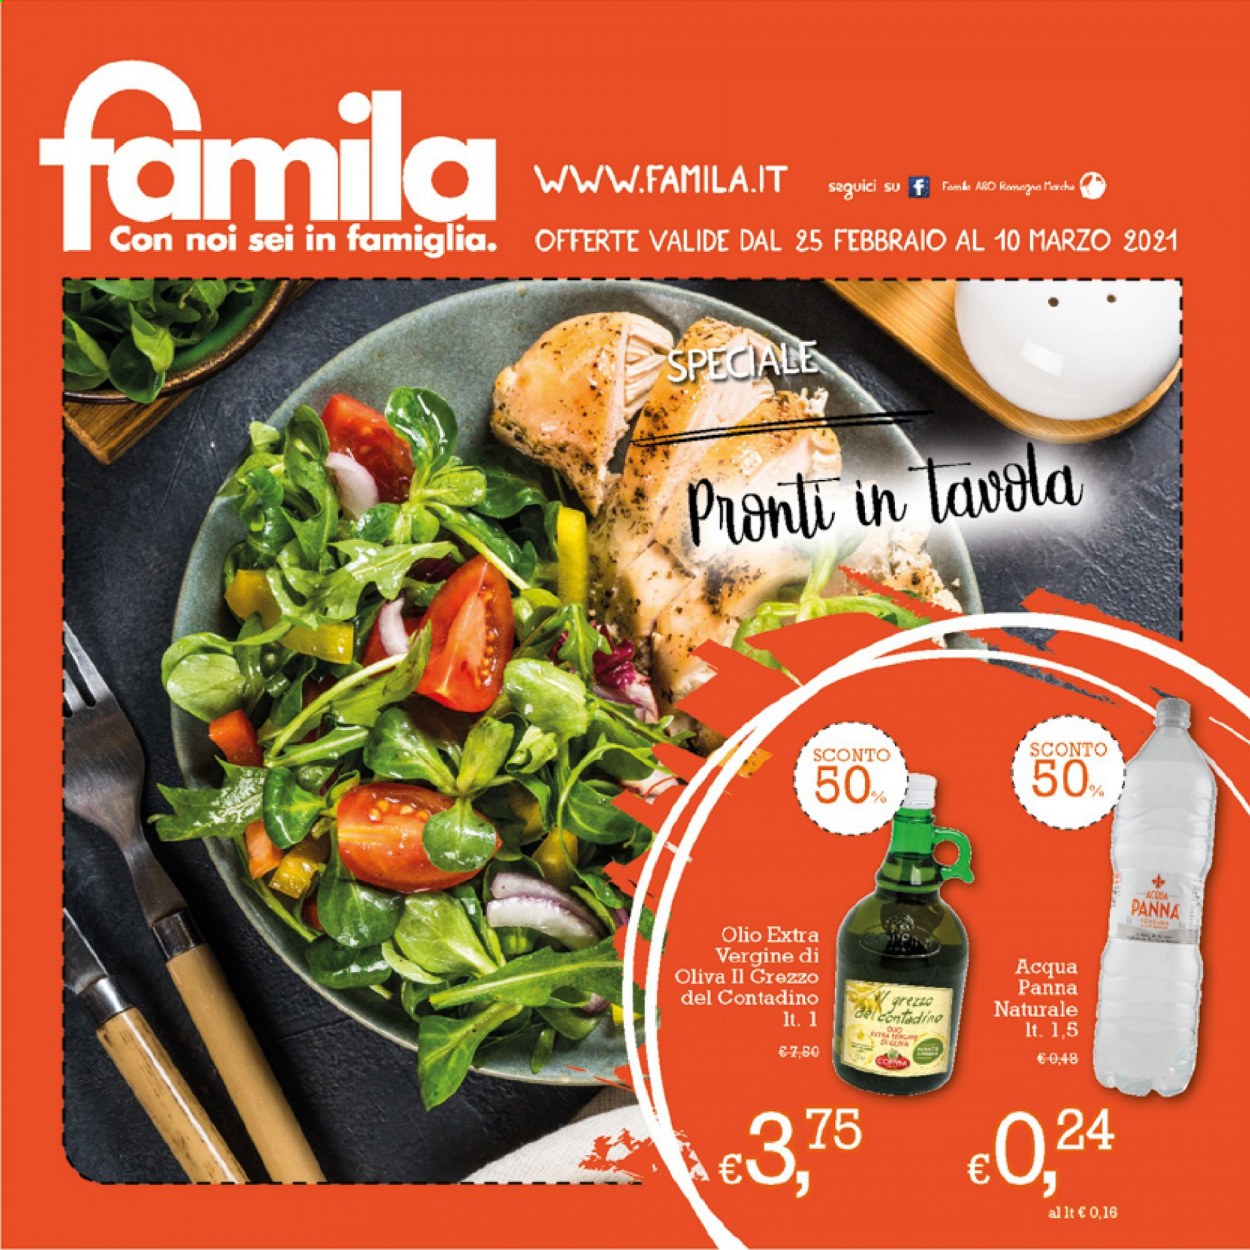 thumbnail - Volantino Famila - 25/2/2021 - 10/3/2021 - Prodotti in offerta - olio, olio extra vergine di oliva, Acqua Panna. Pagina 1.